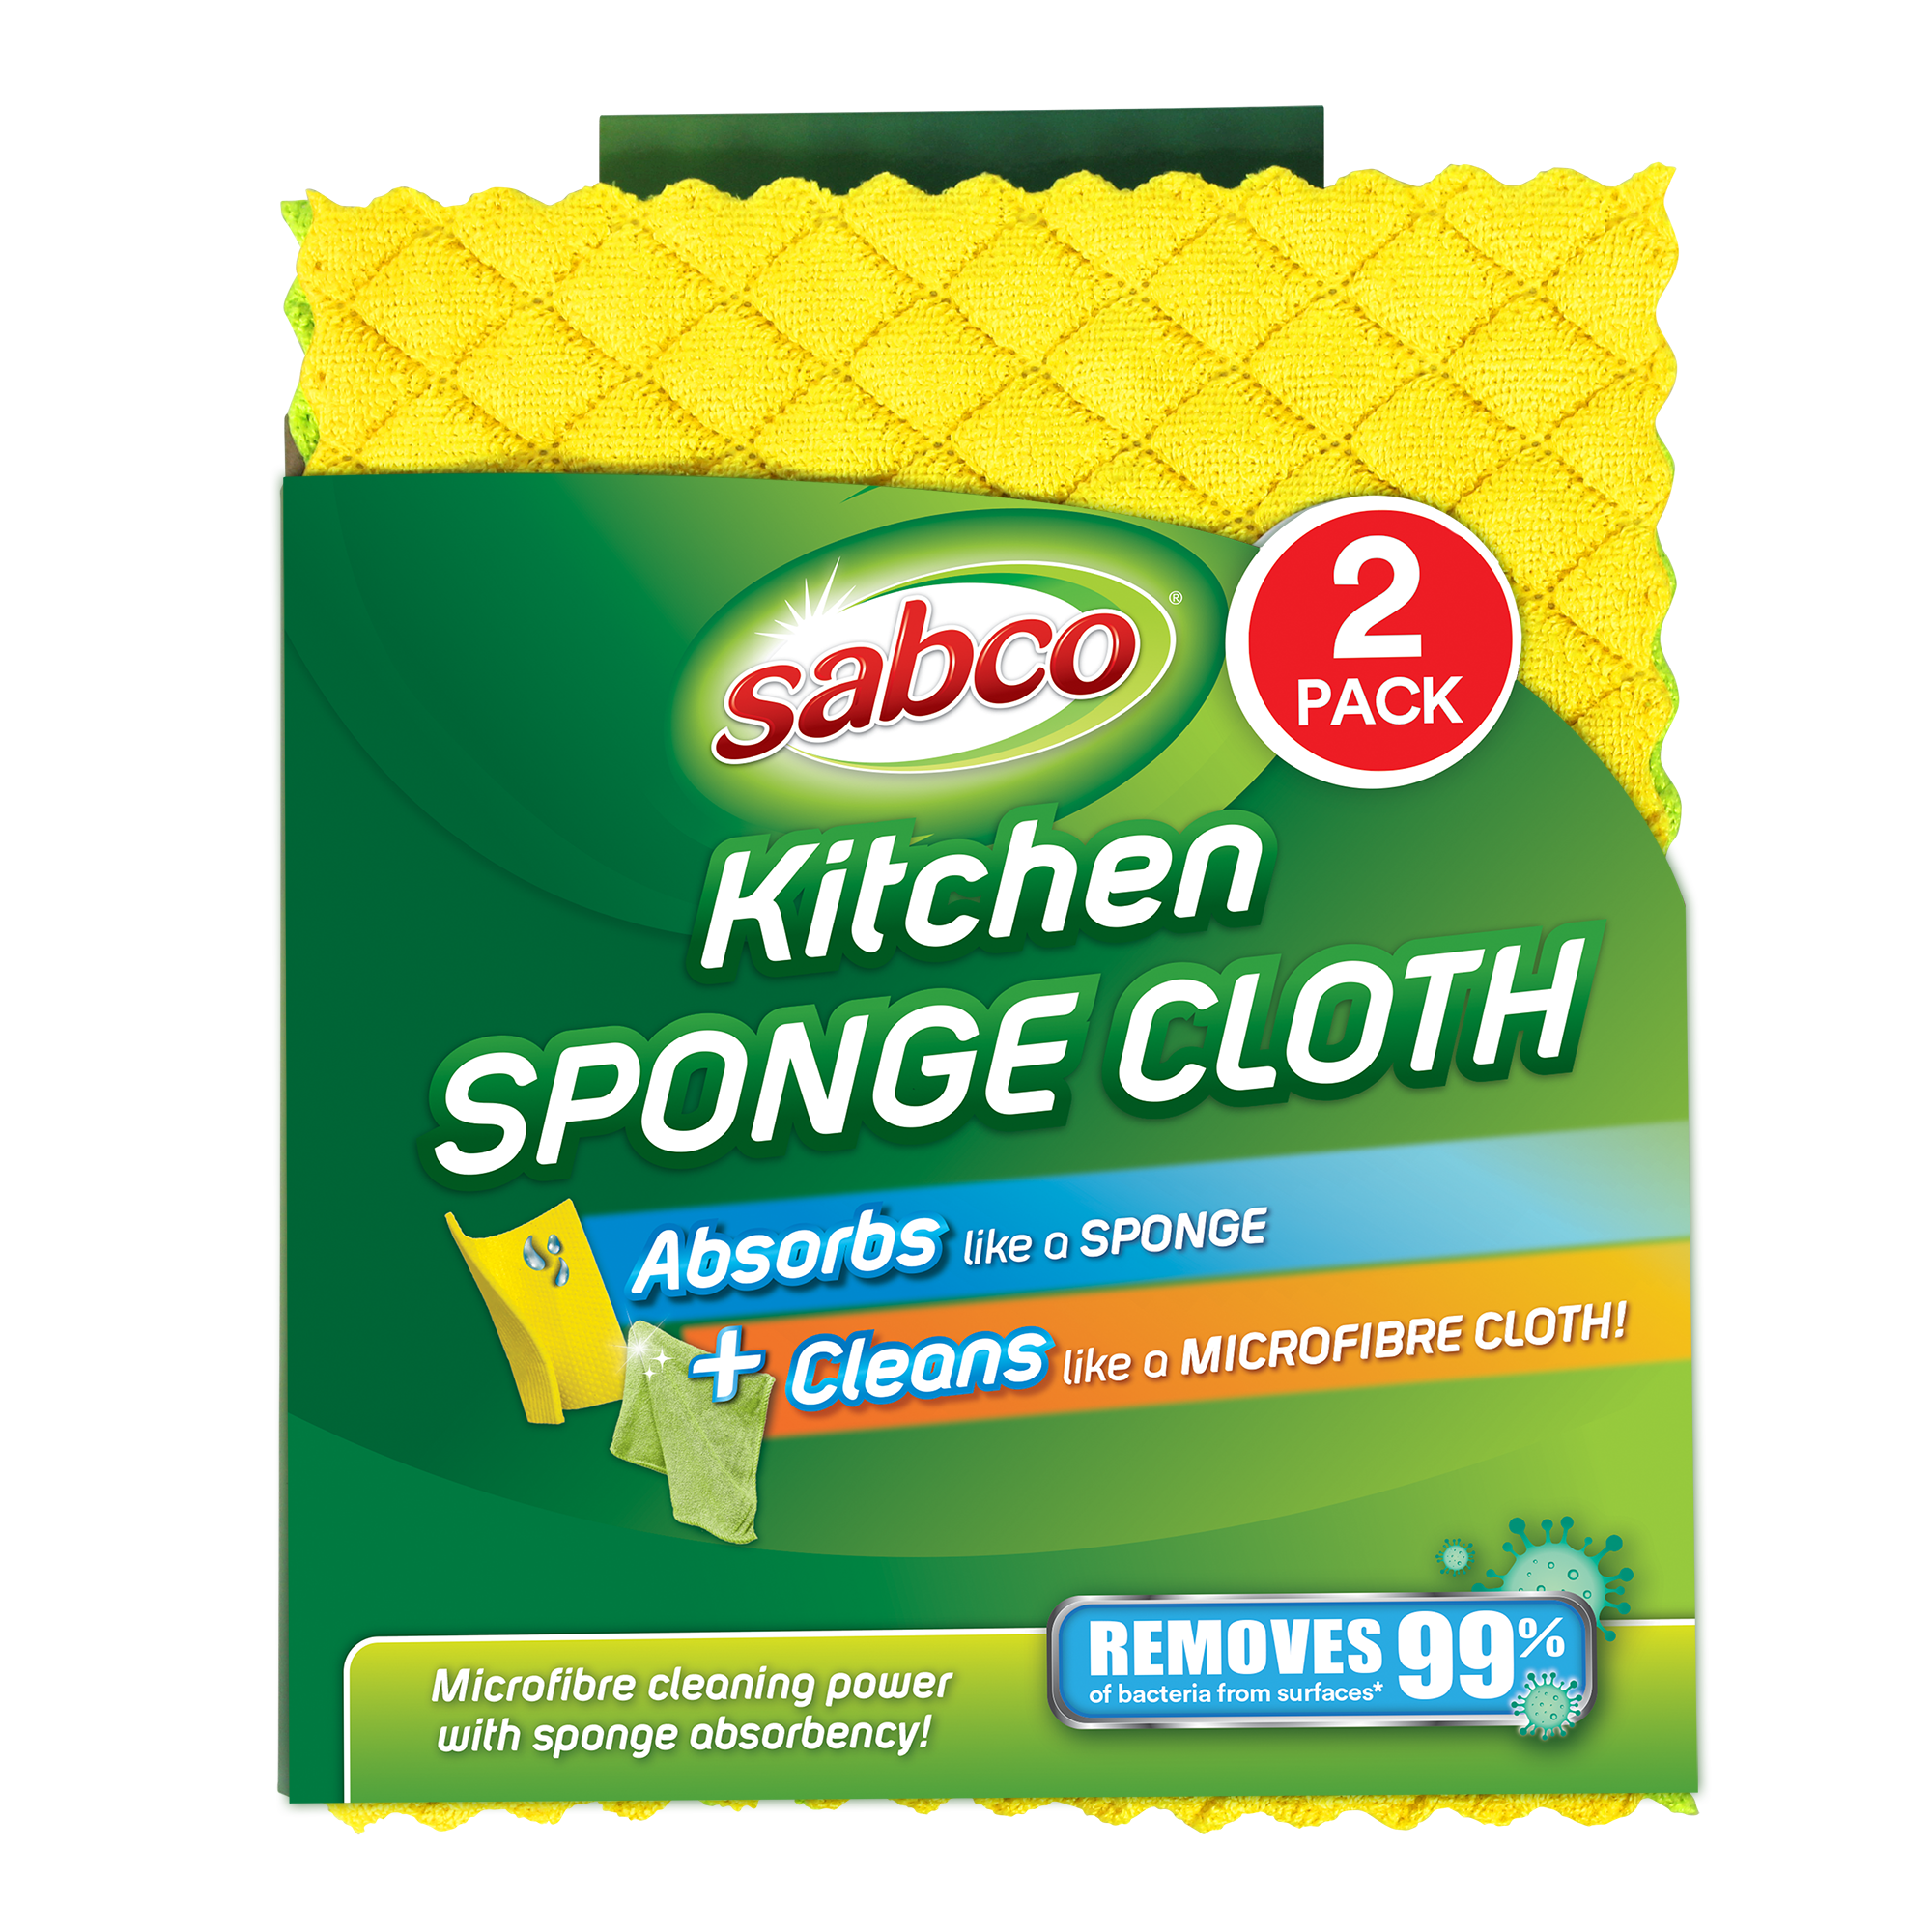 https://sabco.com.au/wp-content/uploads/SAB62103_KitchenSpongeCloth_Packaging_Front.png